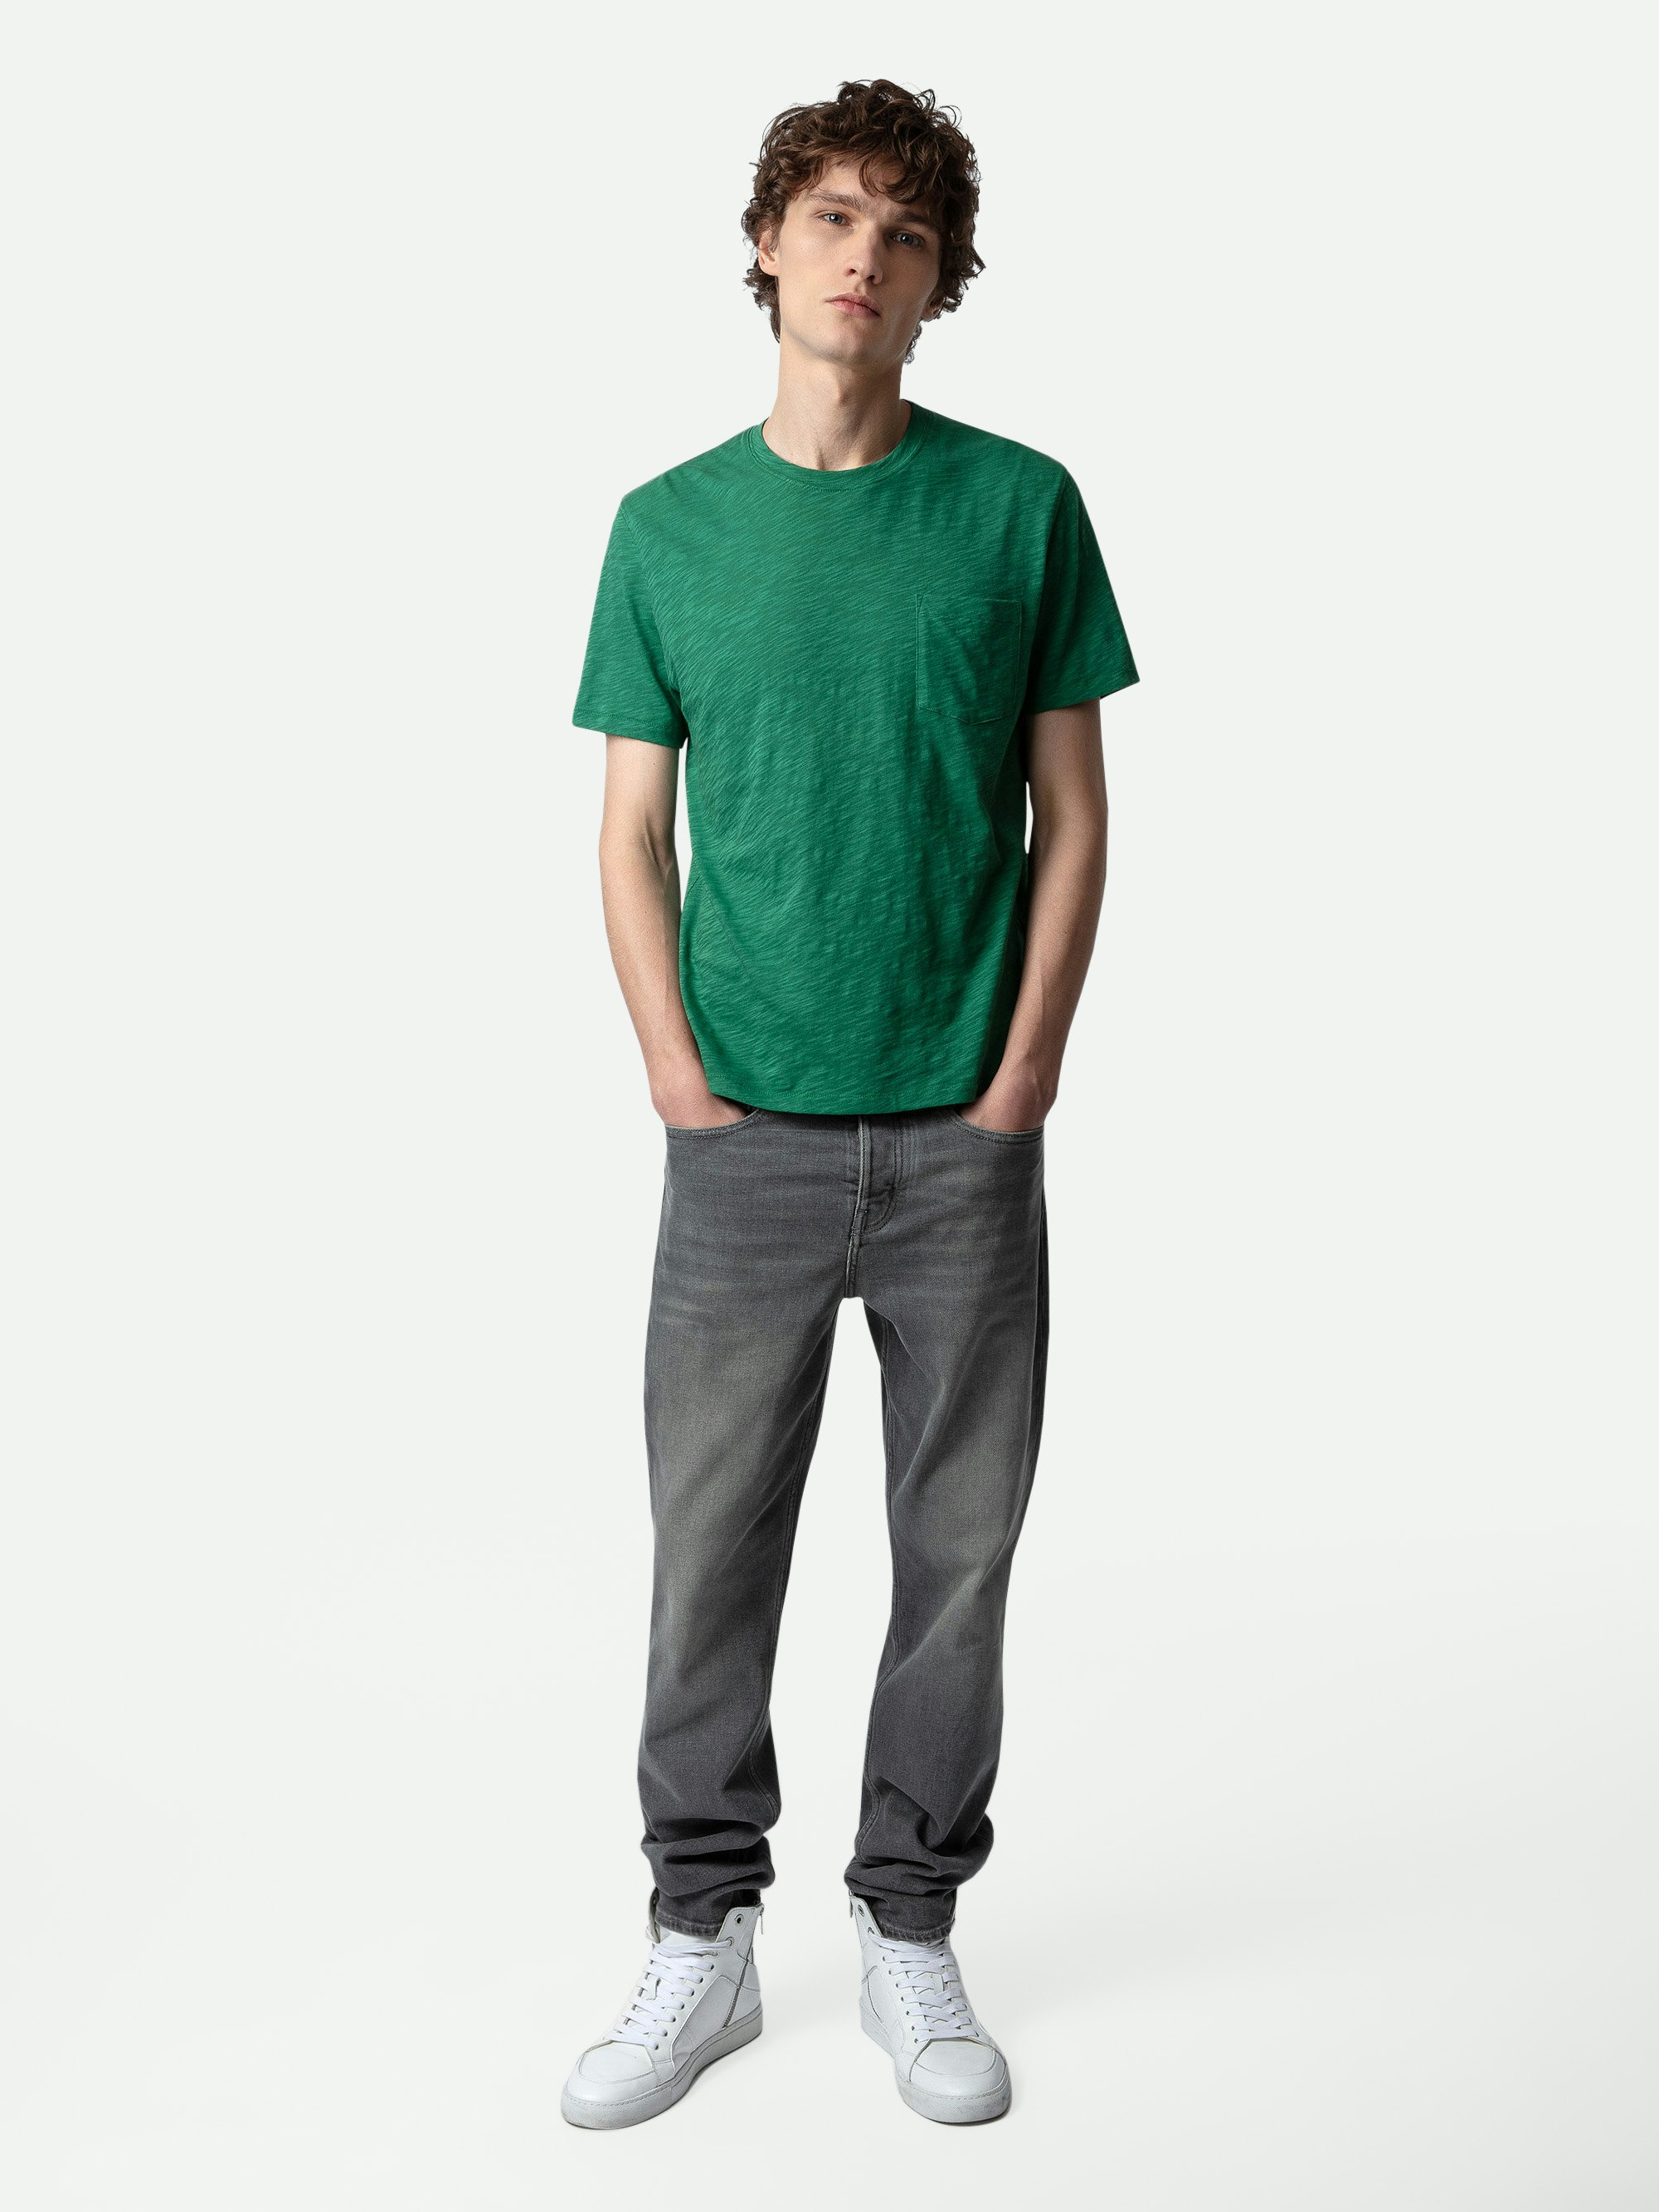 T-shirt Stockholm Flamme - T-shirt en coton flammé vert à manches courtes, poche et motif Skull Block au dos.